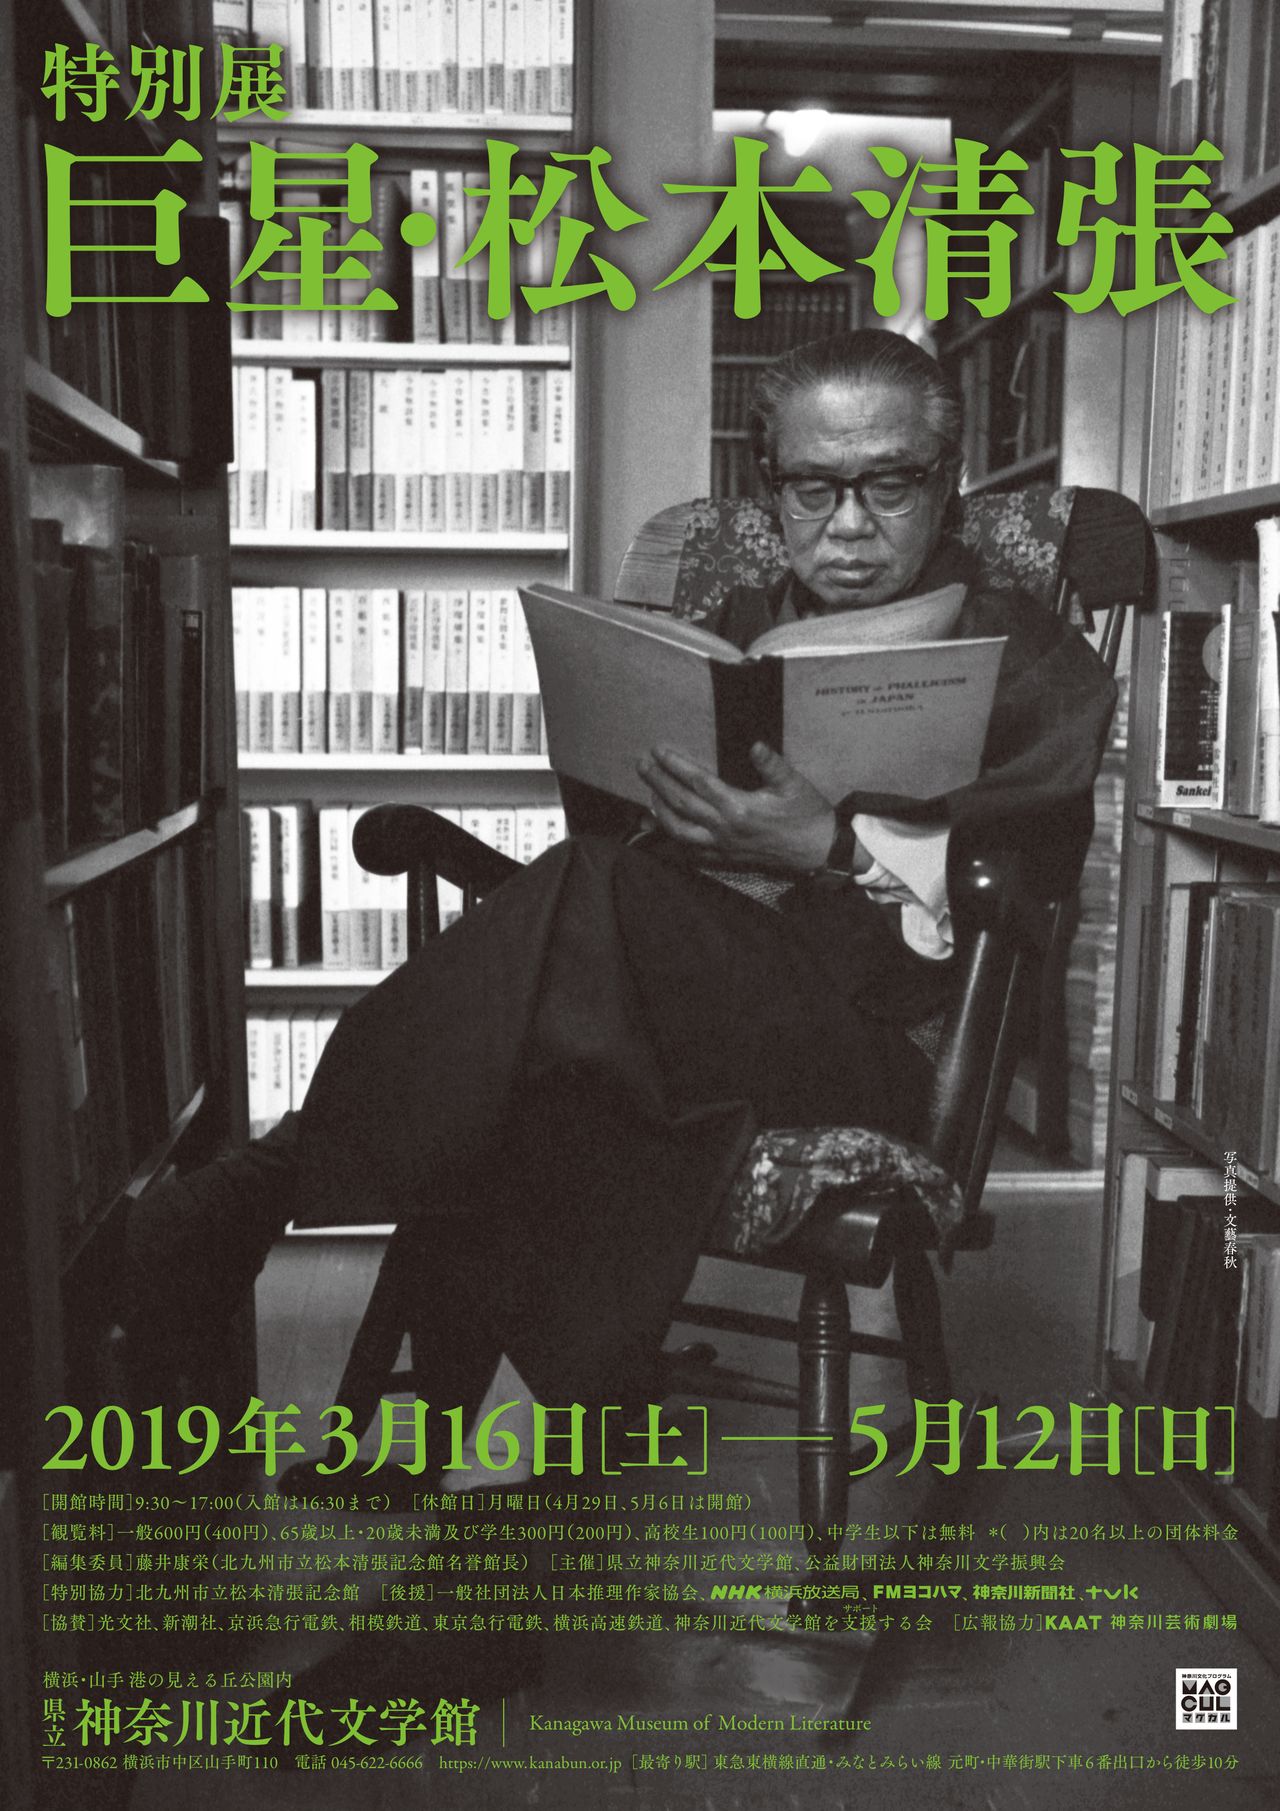 Affiche de l’exposition sur Matsumoto Seichô au musée de littérature moderne de Kanagawa en 2019. (Photo avec l’aimable autorisation musée de littérature moderne de Kanagawa)